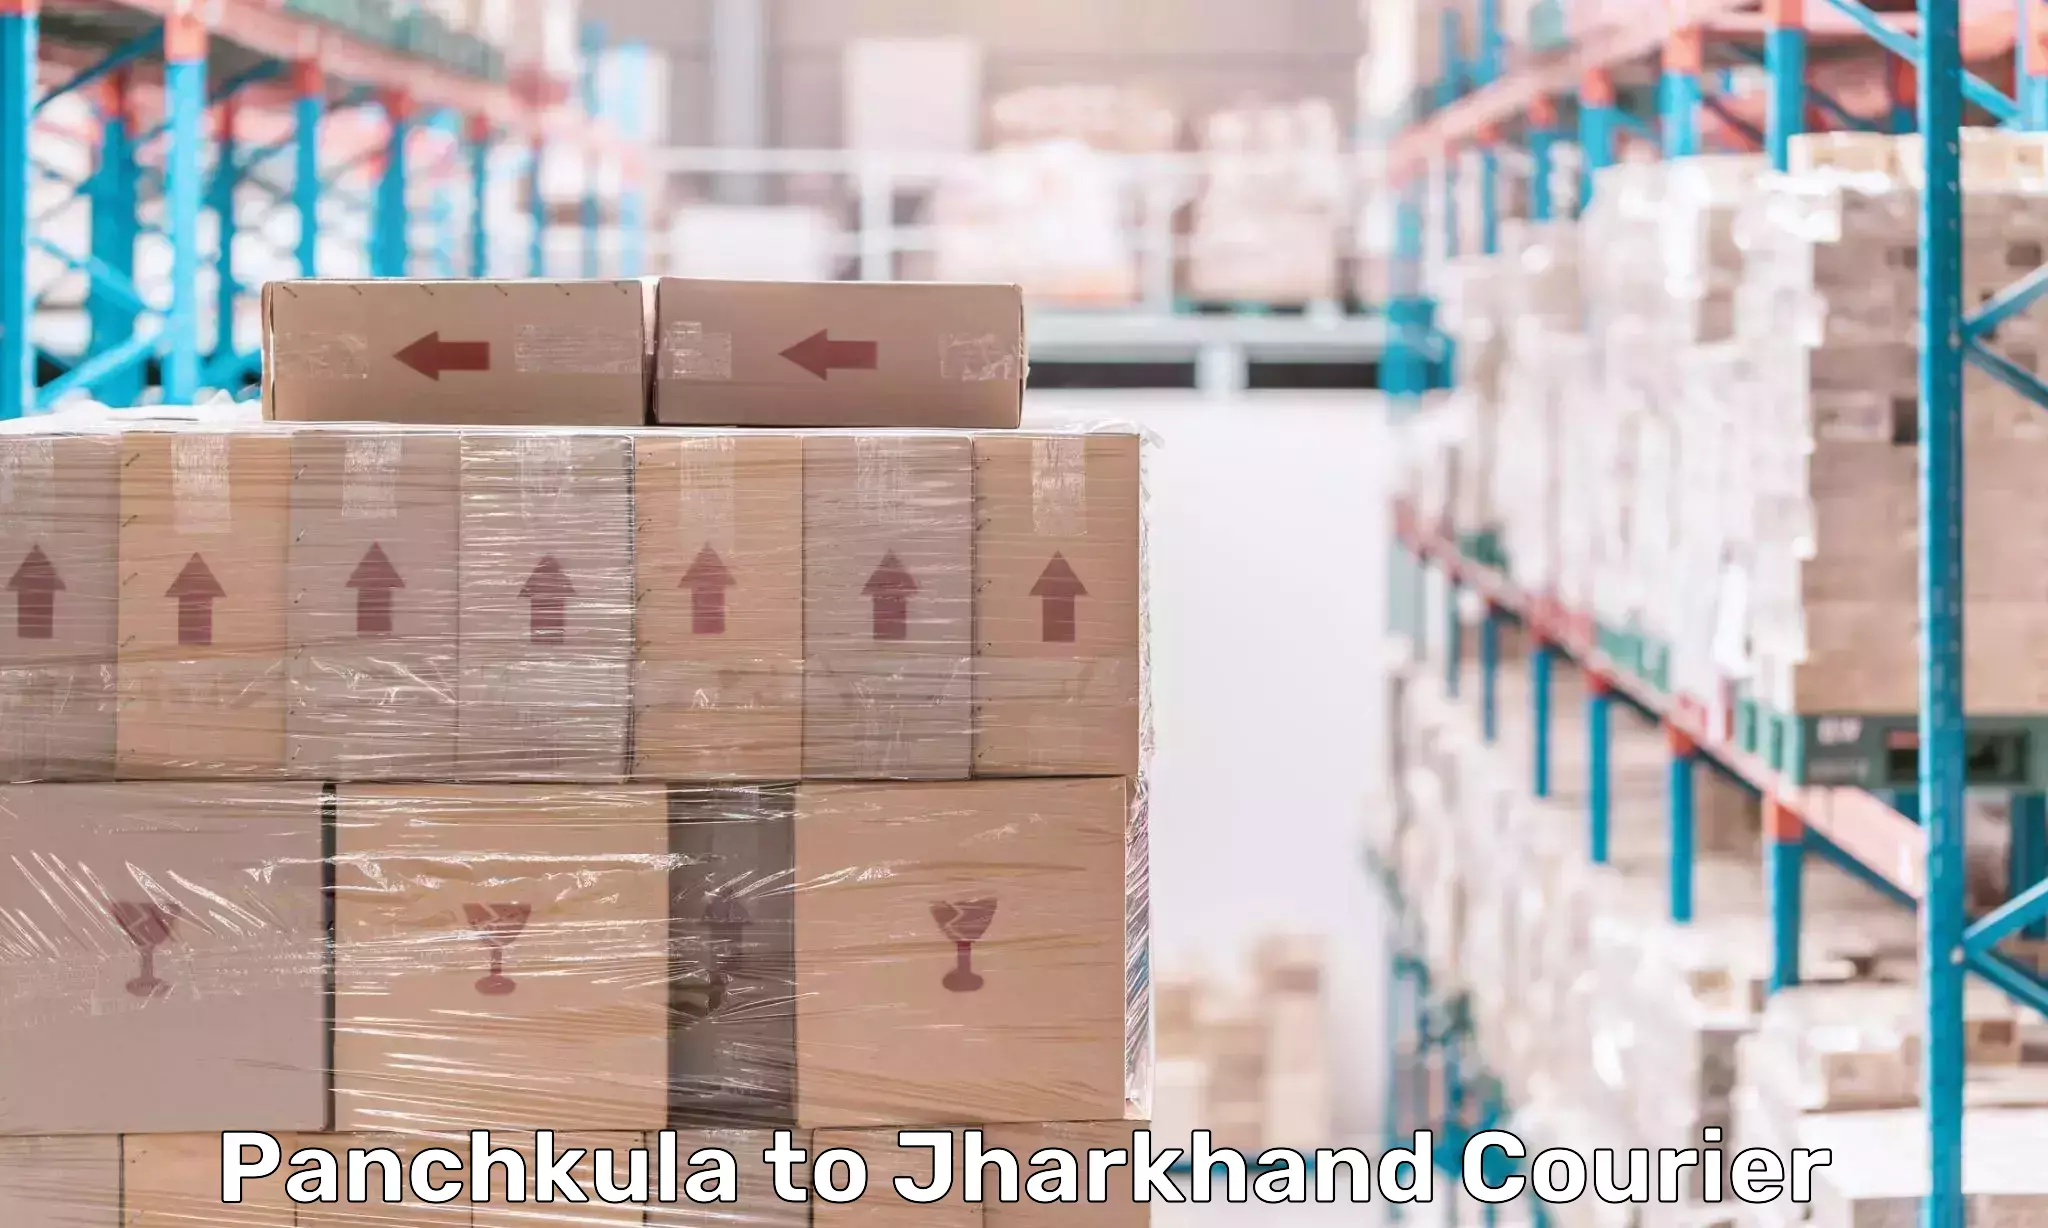 High-performance logistics Panchkula to Tamar